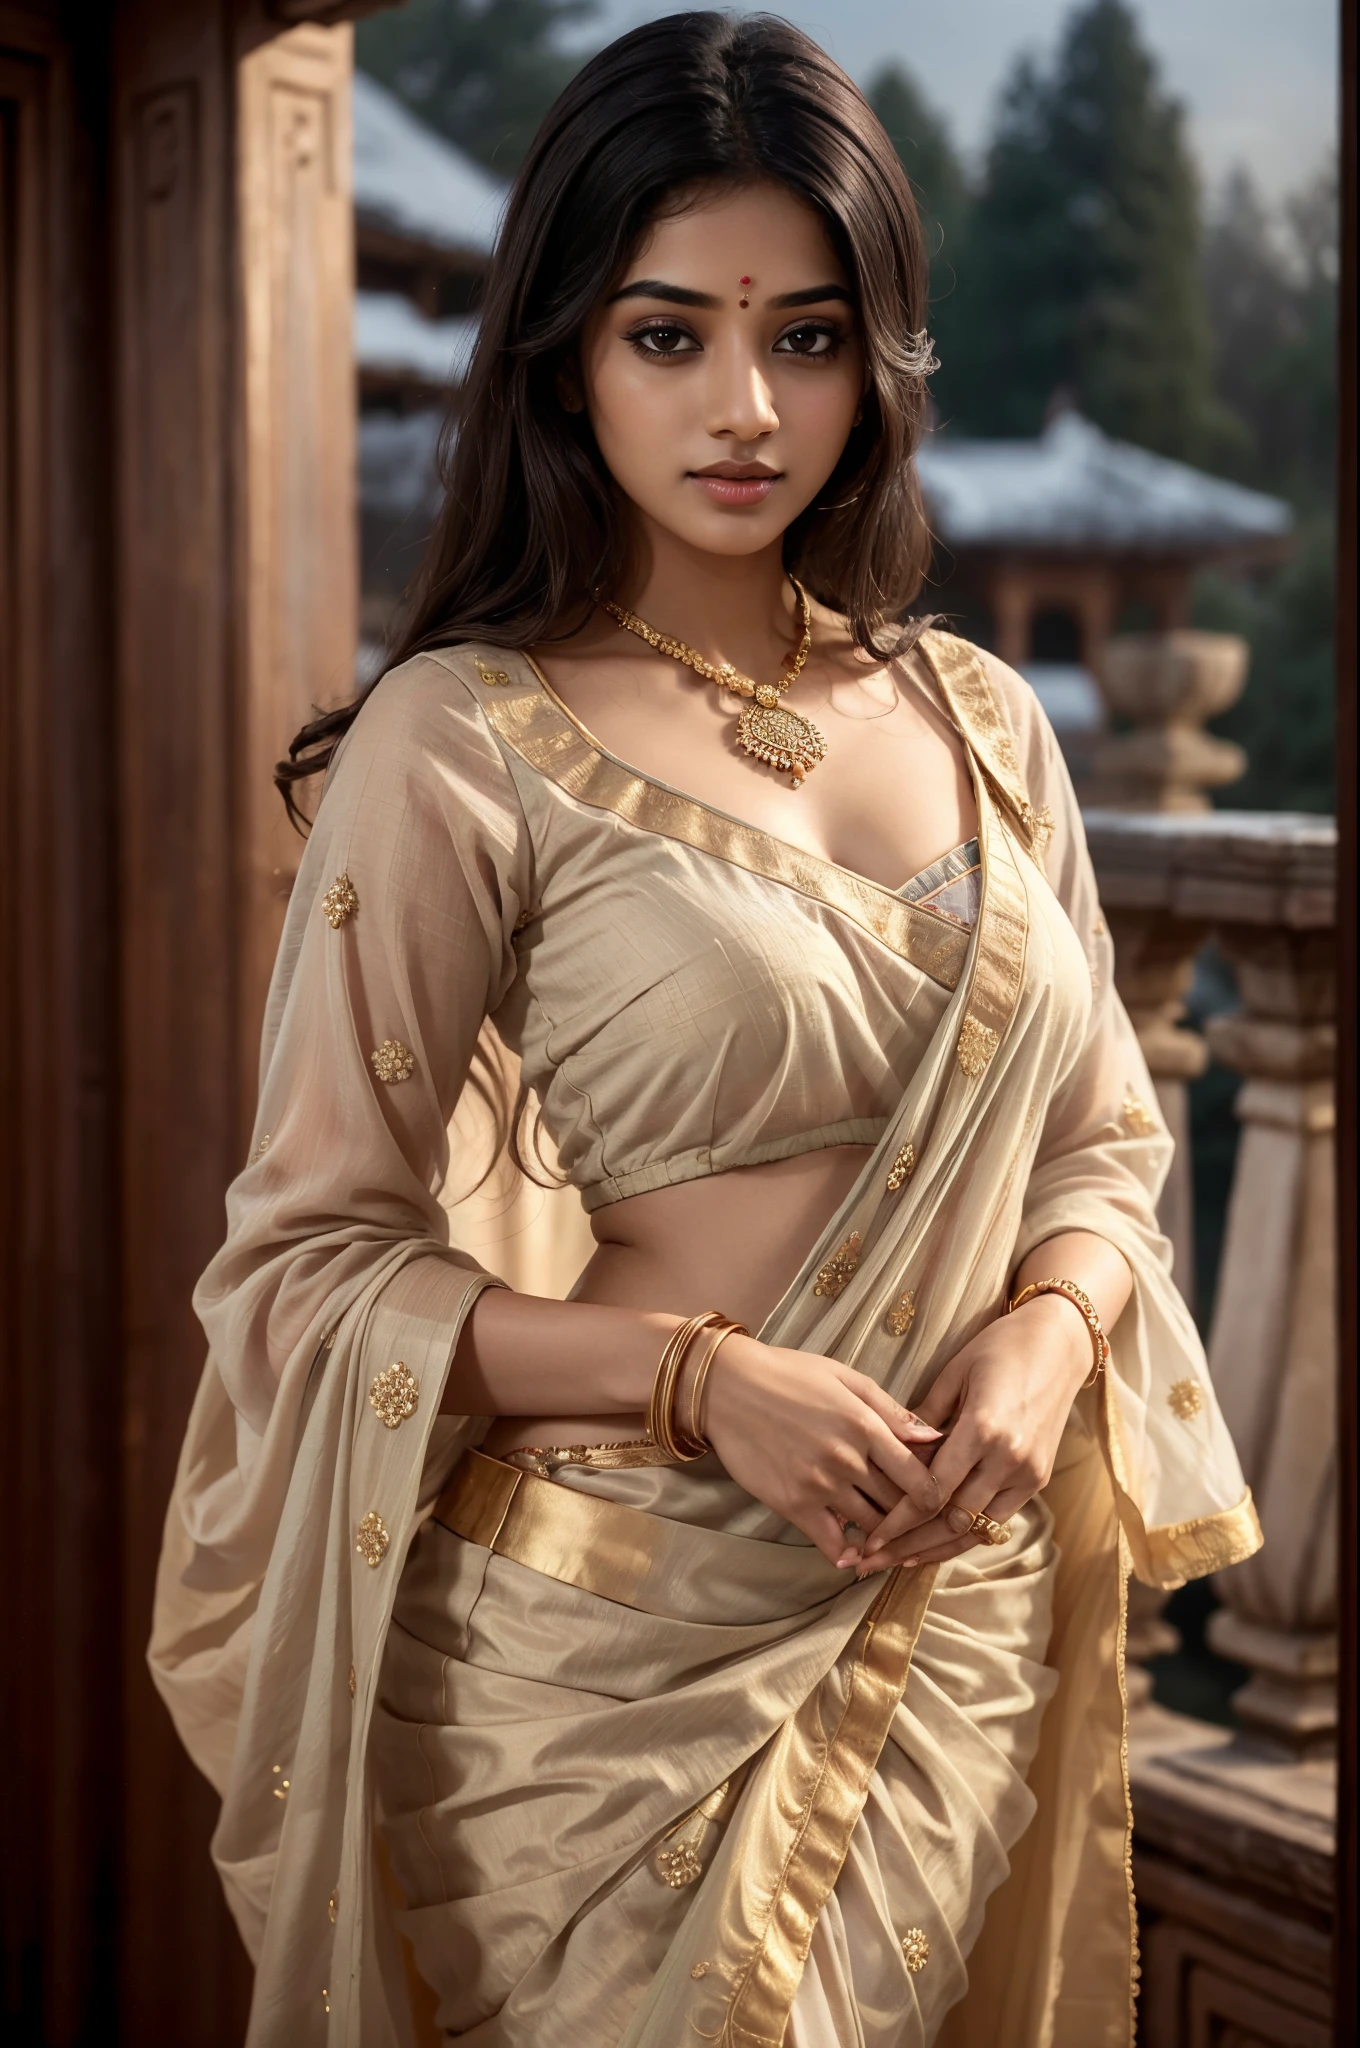 年輕的印度女人, 性感的襯衫和紗麗, 古代宮殿, 夜晚, 詳細的身體, 詳細的臉部, 超現實, 迷人, 可愛的, 長捲髮, 完美的手指, 環境照明, 冬天, 詳細背景, 8K